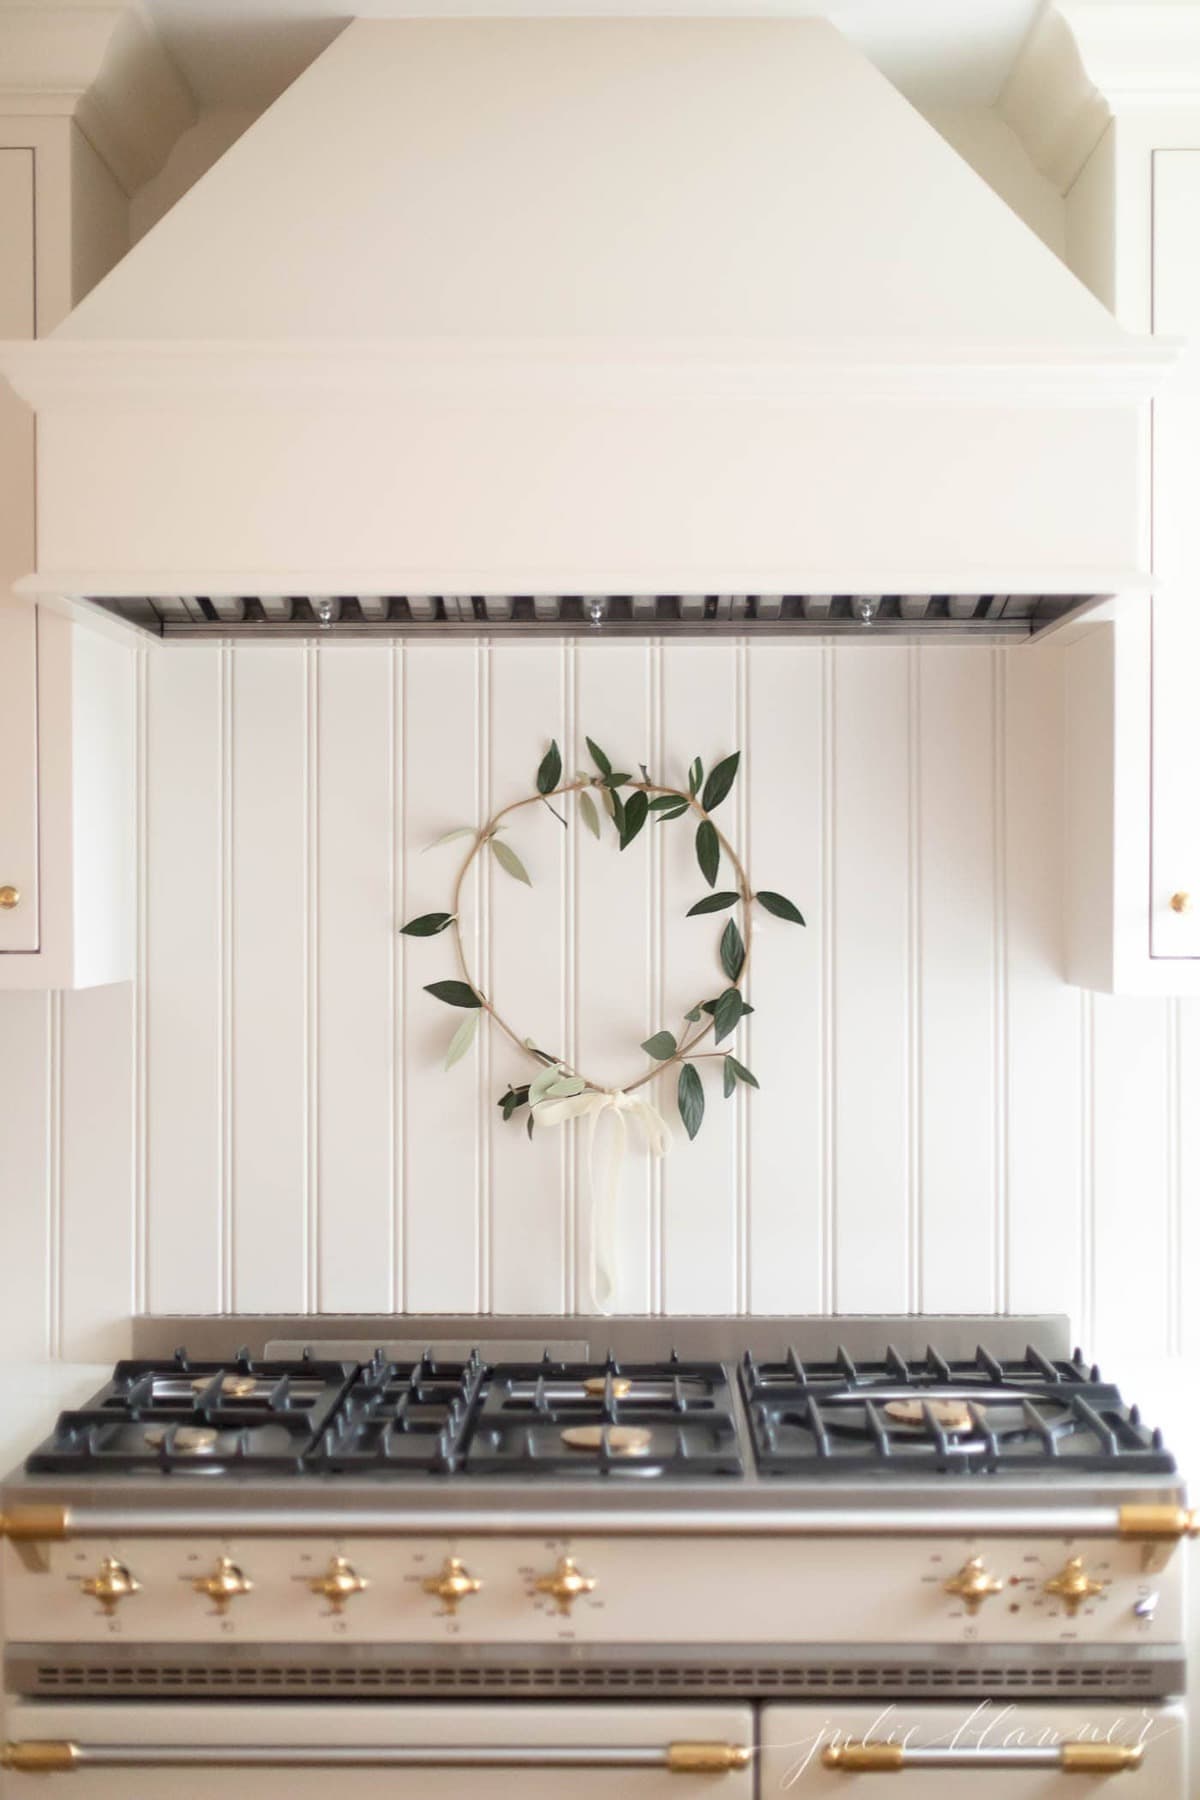 wreath above range in cream kitchen